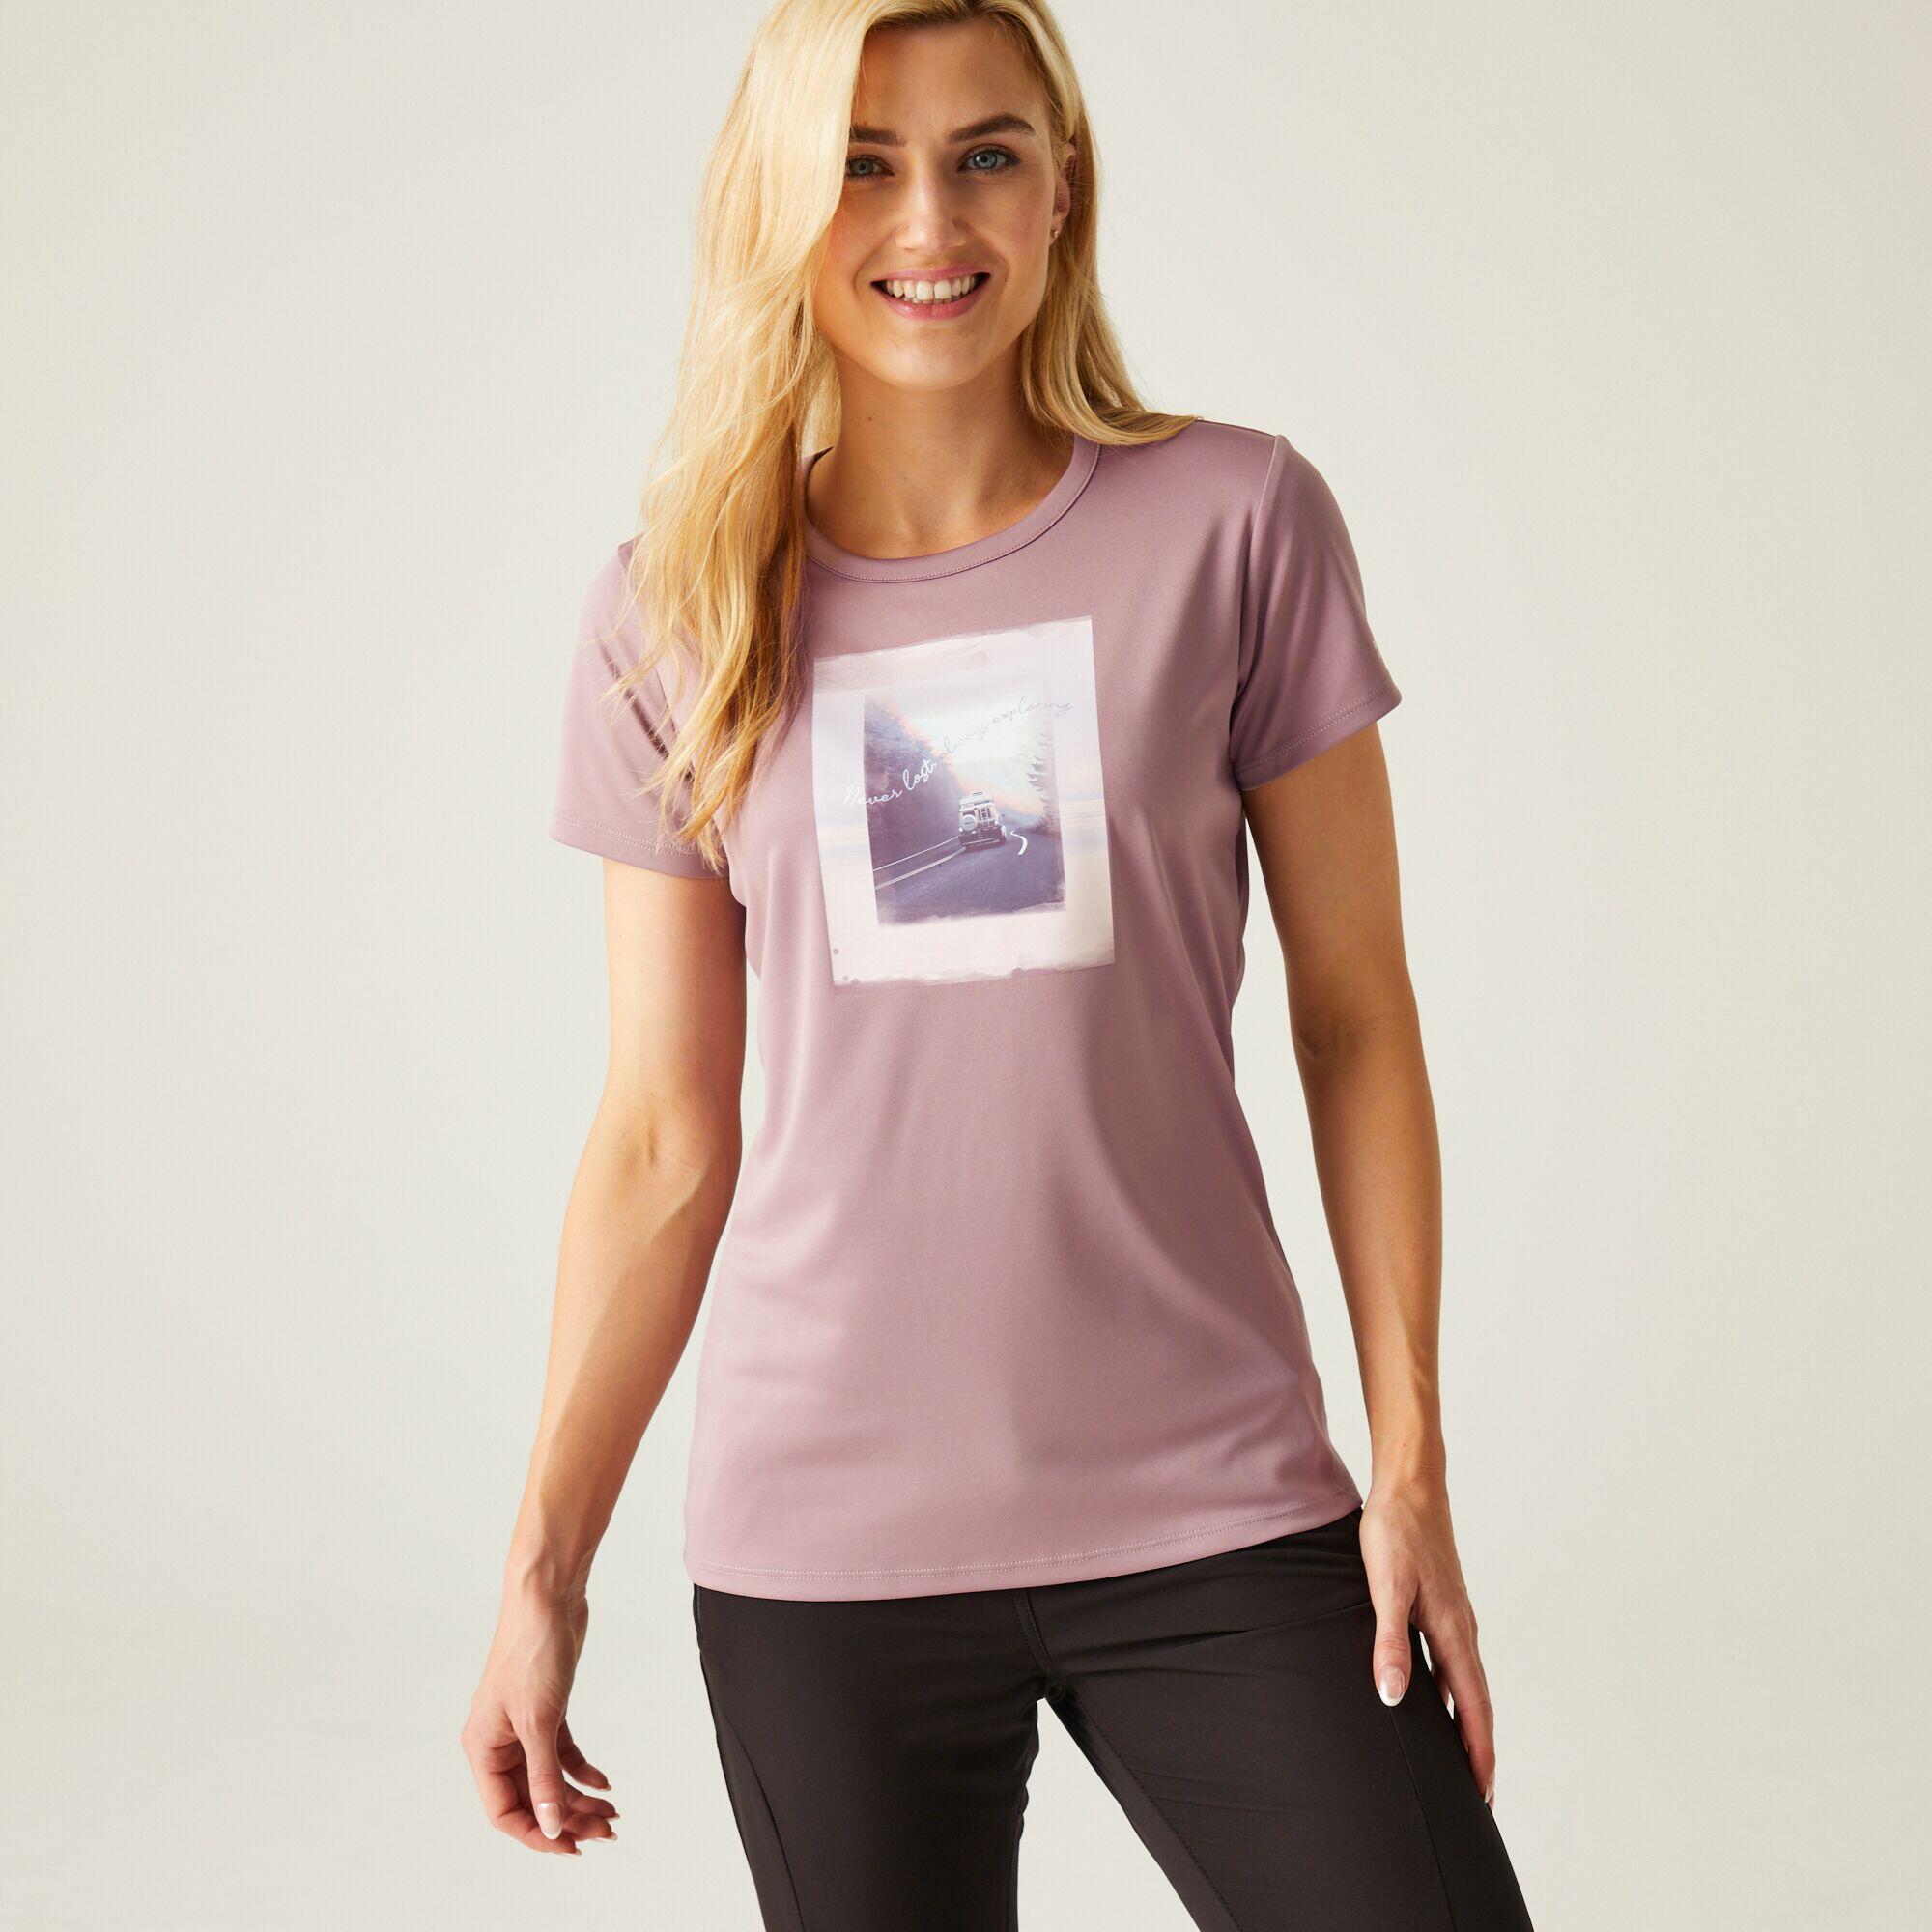 Women's Fingal VIII T-Shirt 1/5